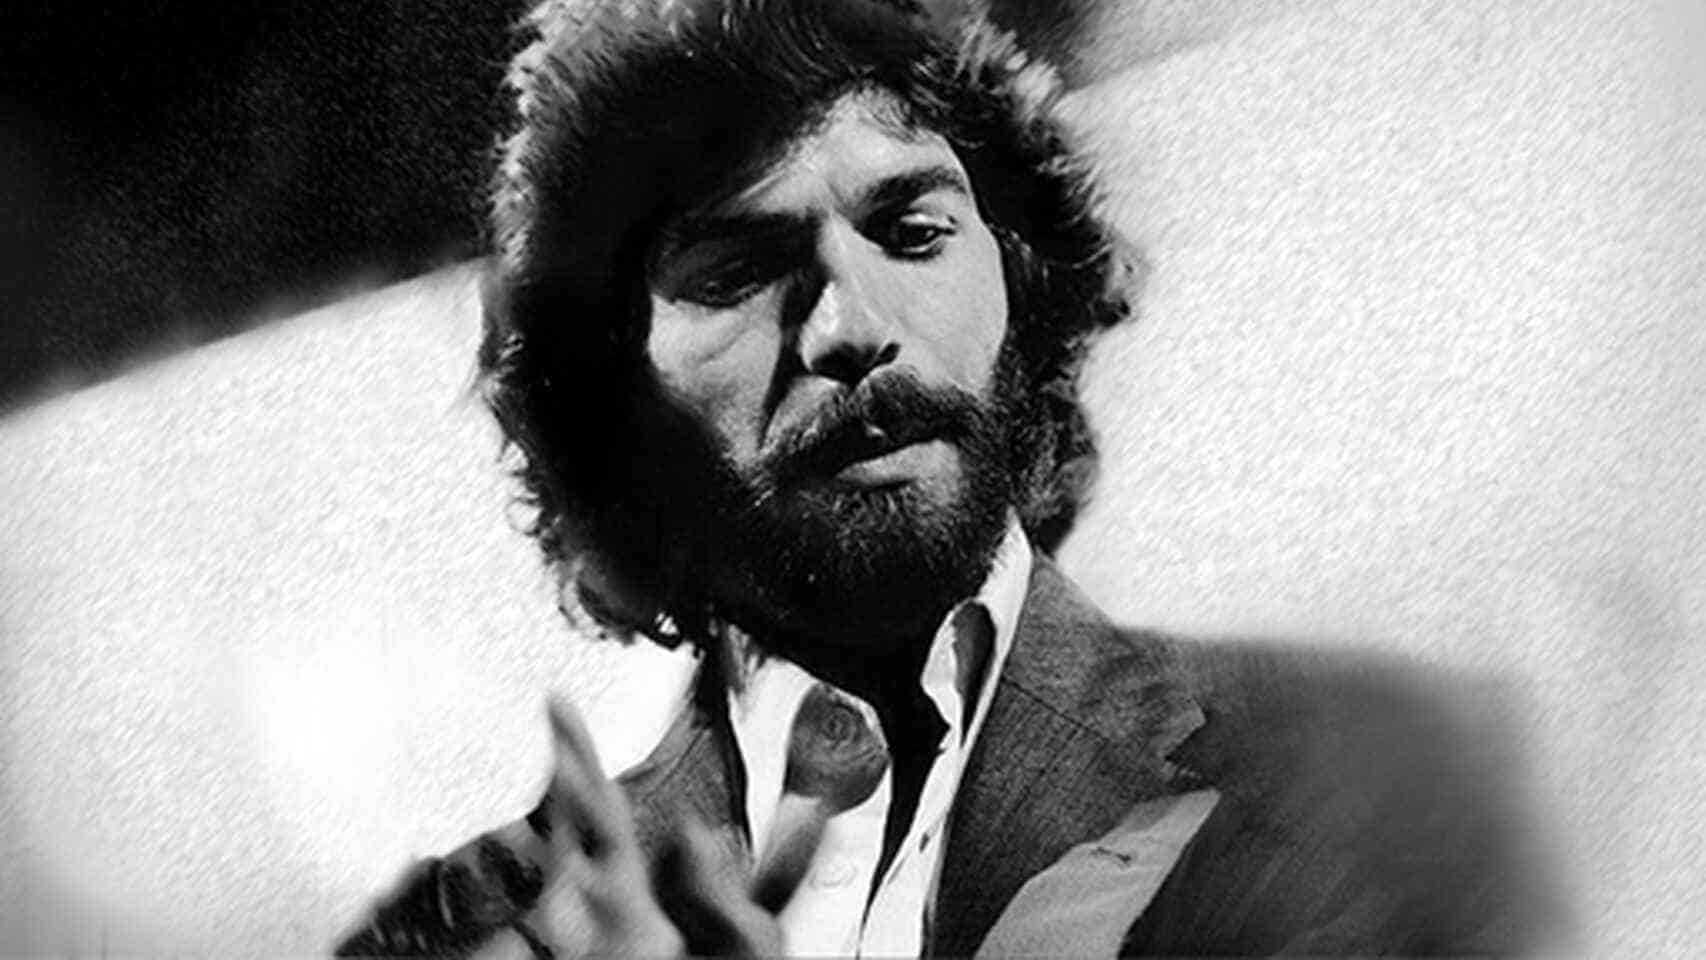 Treinta años sin Camarón de la Isla, el cantaor  de los sesenta cigarrillos diarios que dijo "no" a Mick Jagger